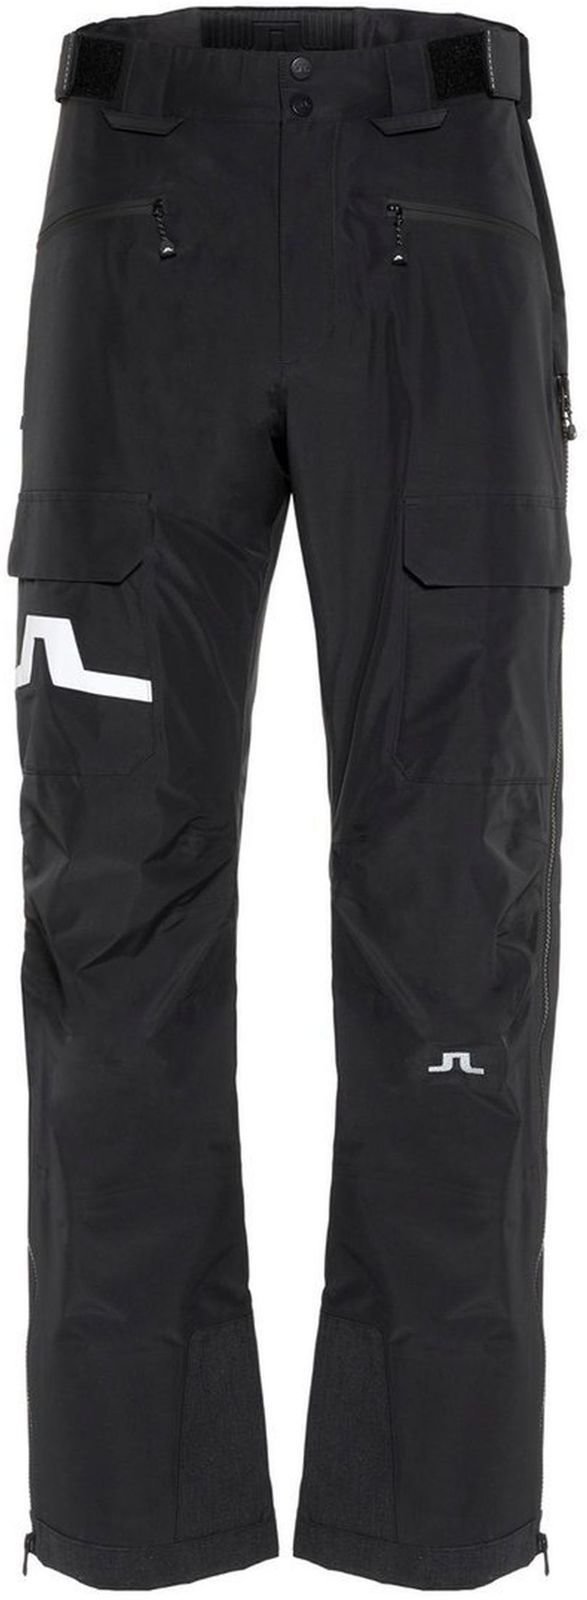 Pantalones de esquí J.Lindeberg Harper P 3L GoreTex Negro L